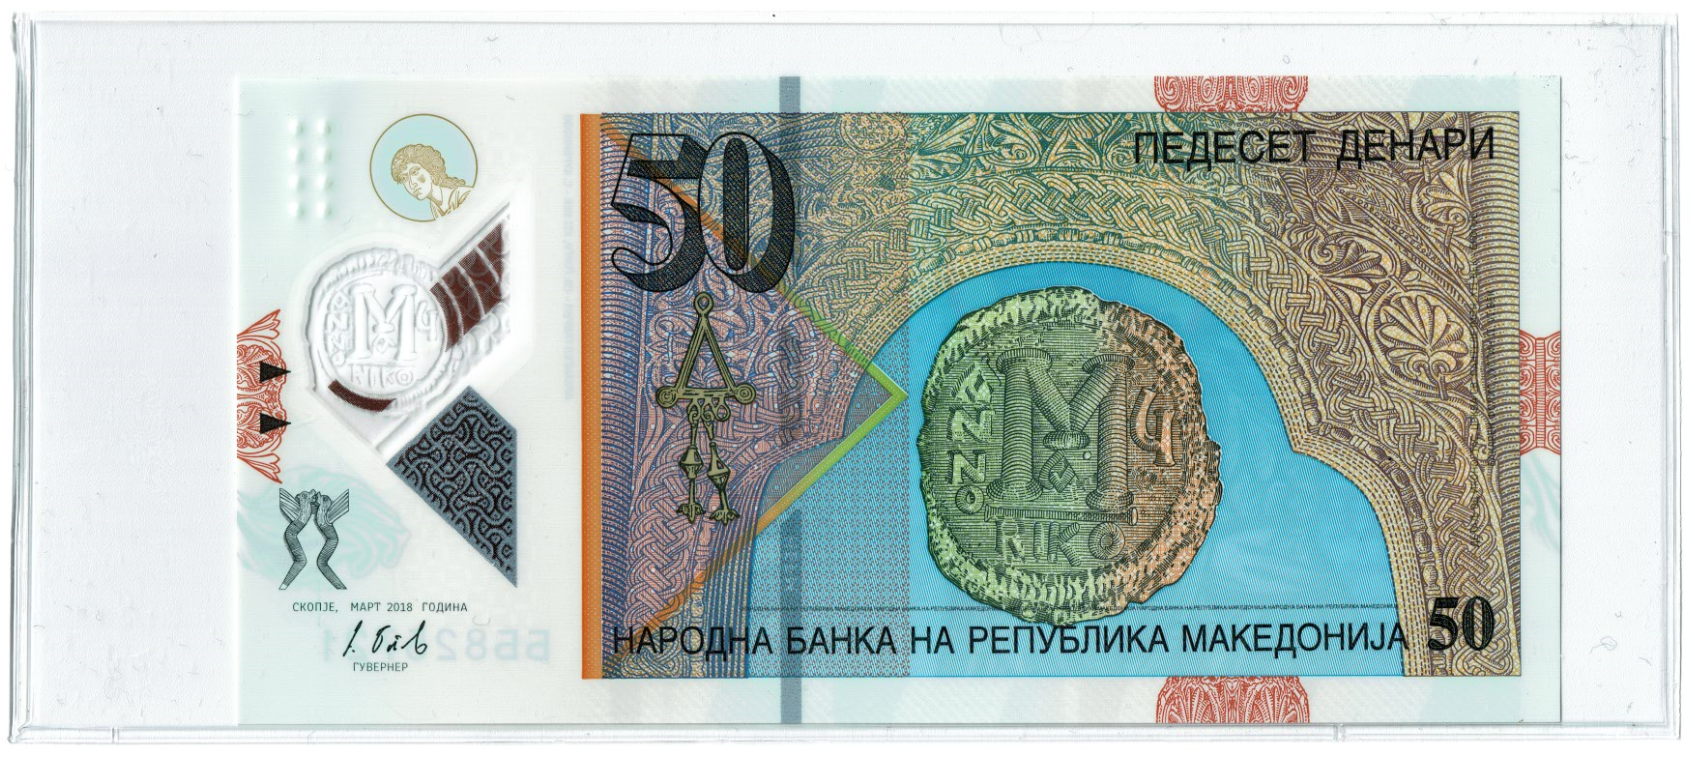 Macedonia 50 Denari Reverse_000040.png